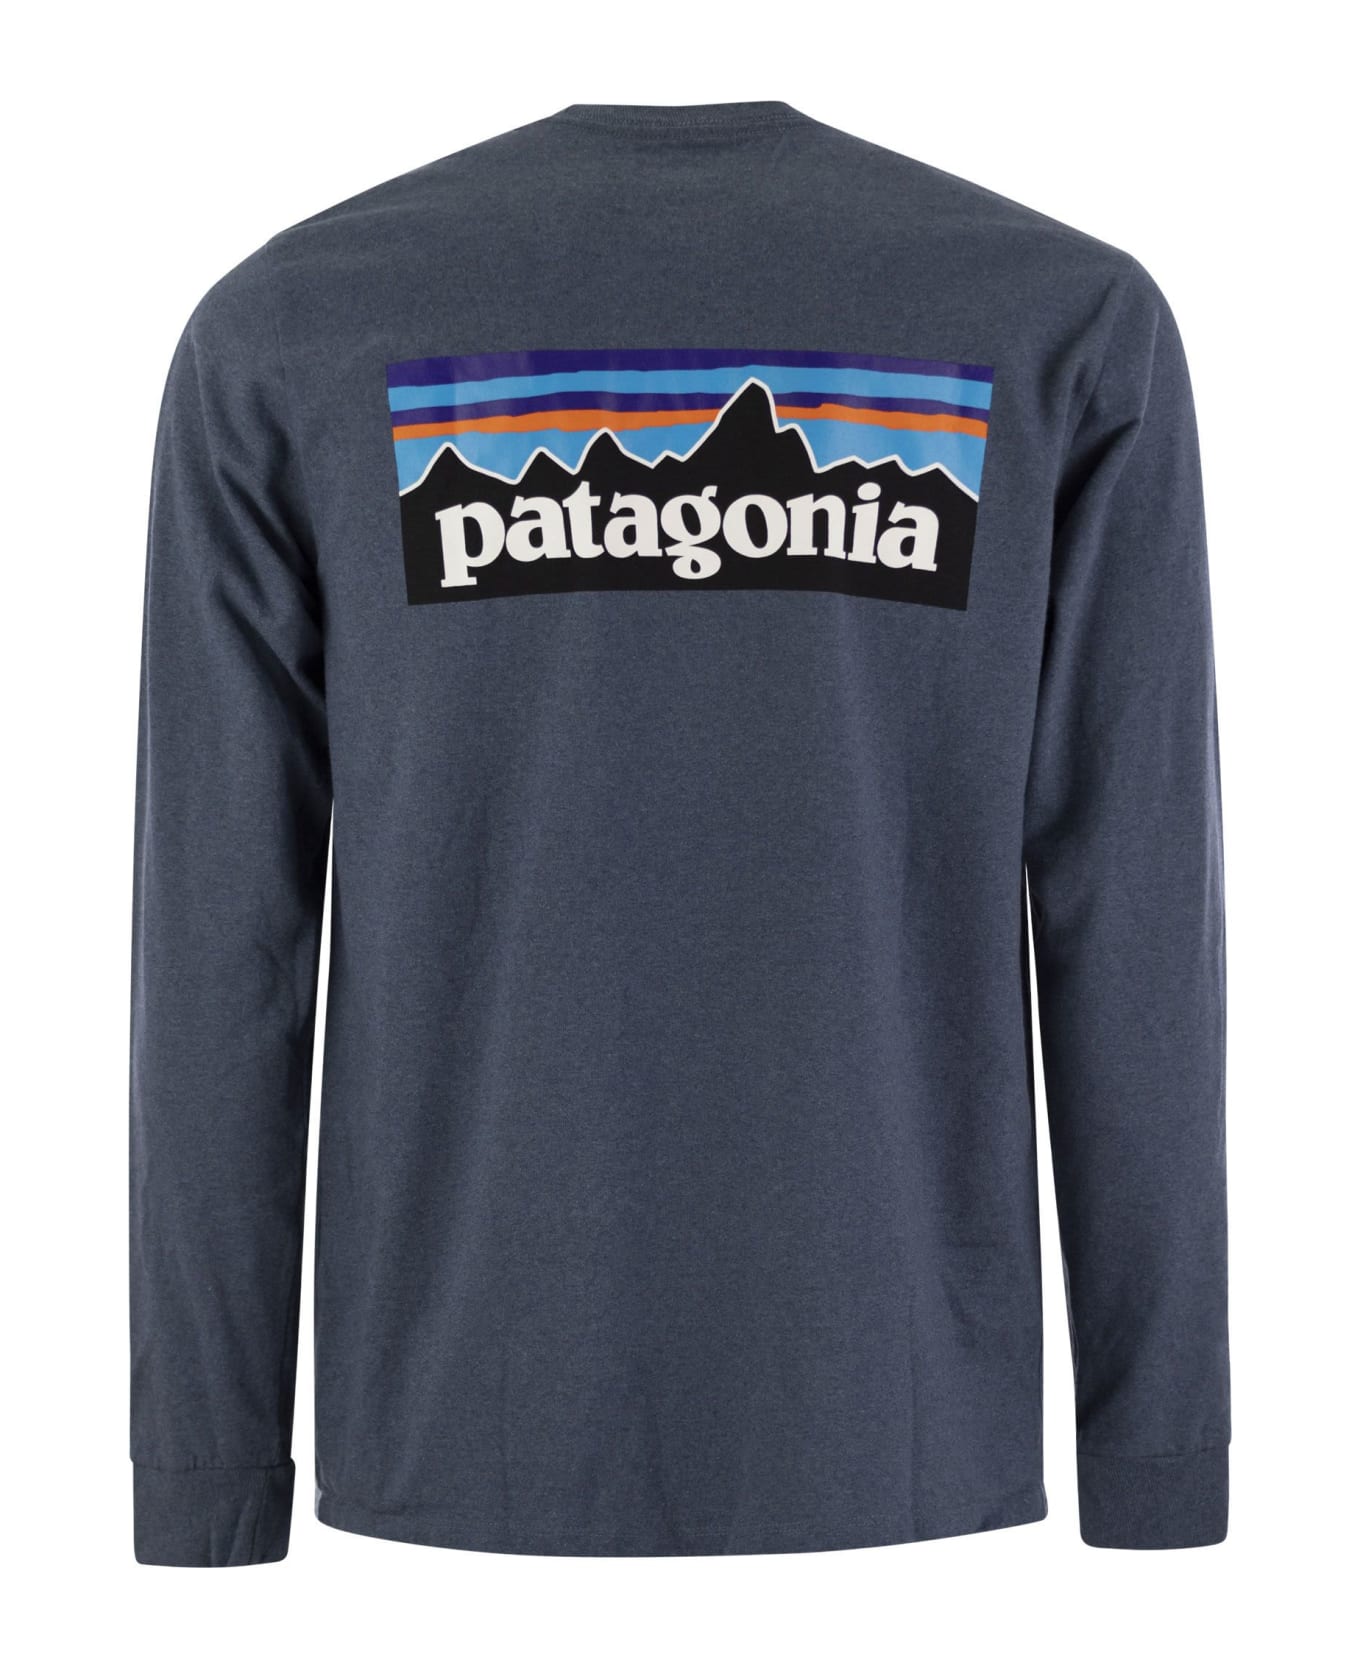 Patagonia T-shirt With Logo Long Sleeves - Avio